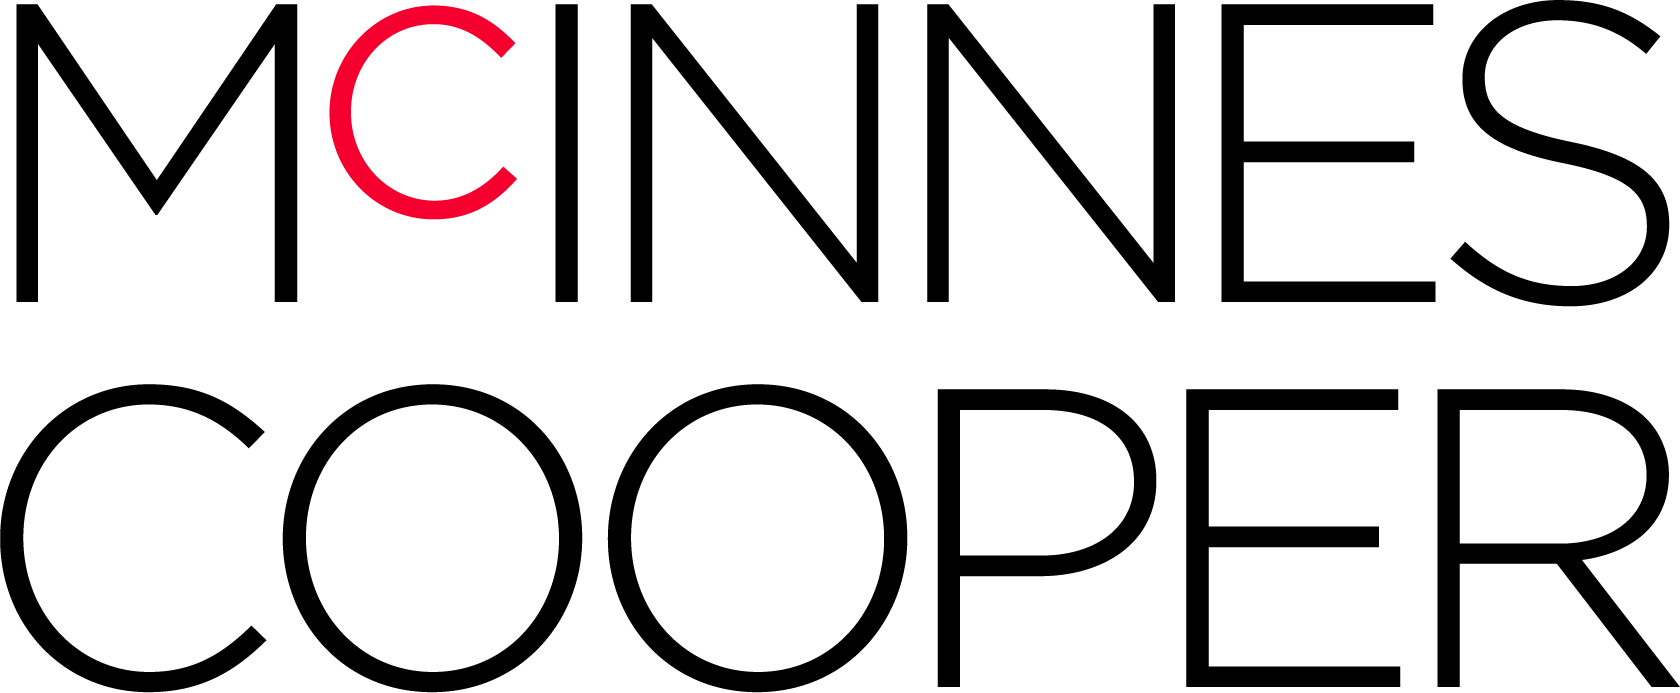 New McInnes Cooper Logo CMYK.jpg